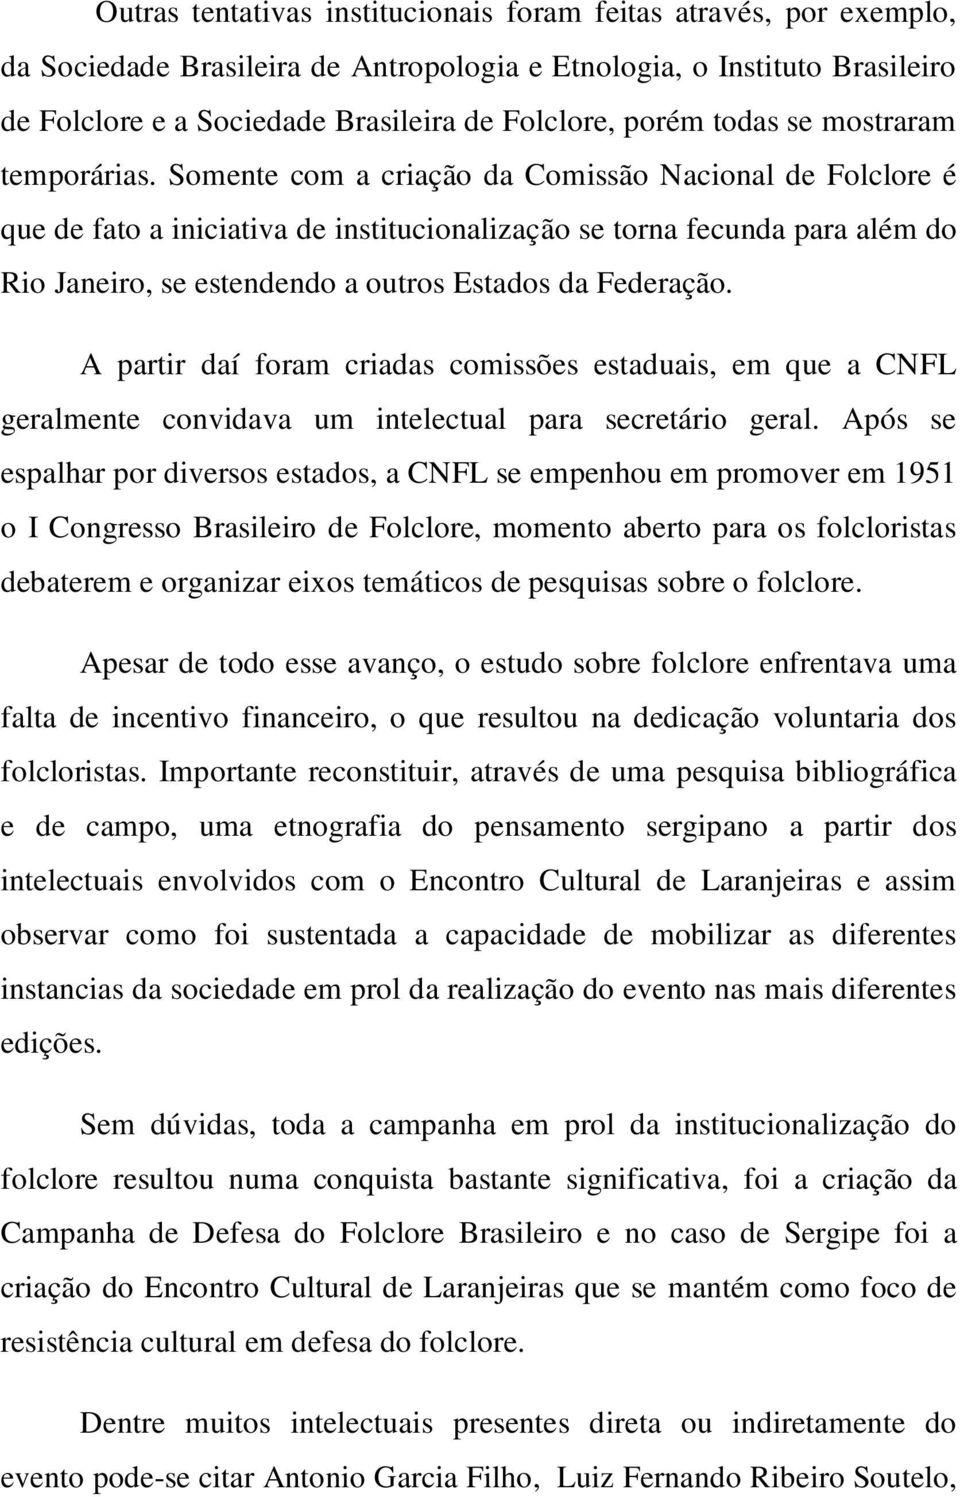 Somente com a criação da Comissão Nacional de Folclore é que de fato a iniciativa de institucionalização se torna fecunda para além do Rio Janeiro, se estendendo a outros Estados da Federação.